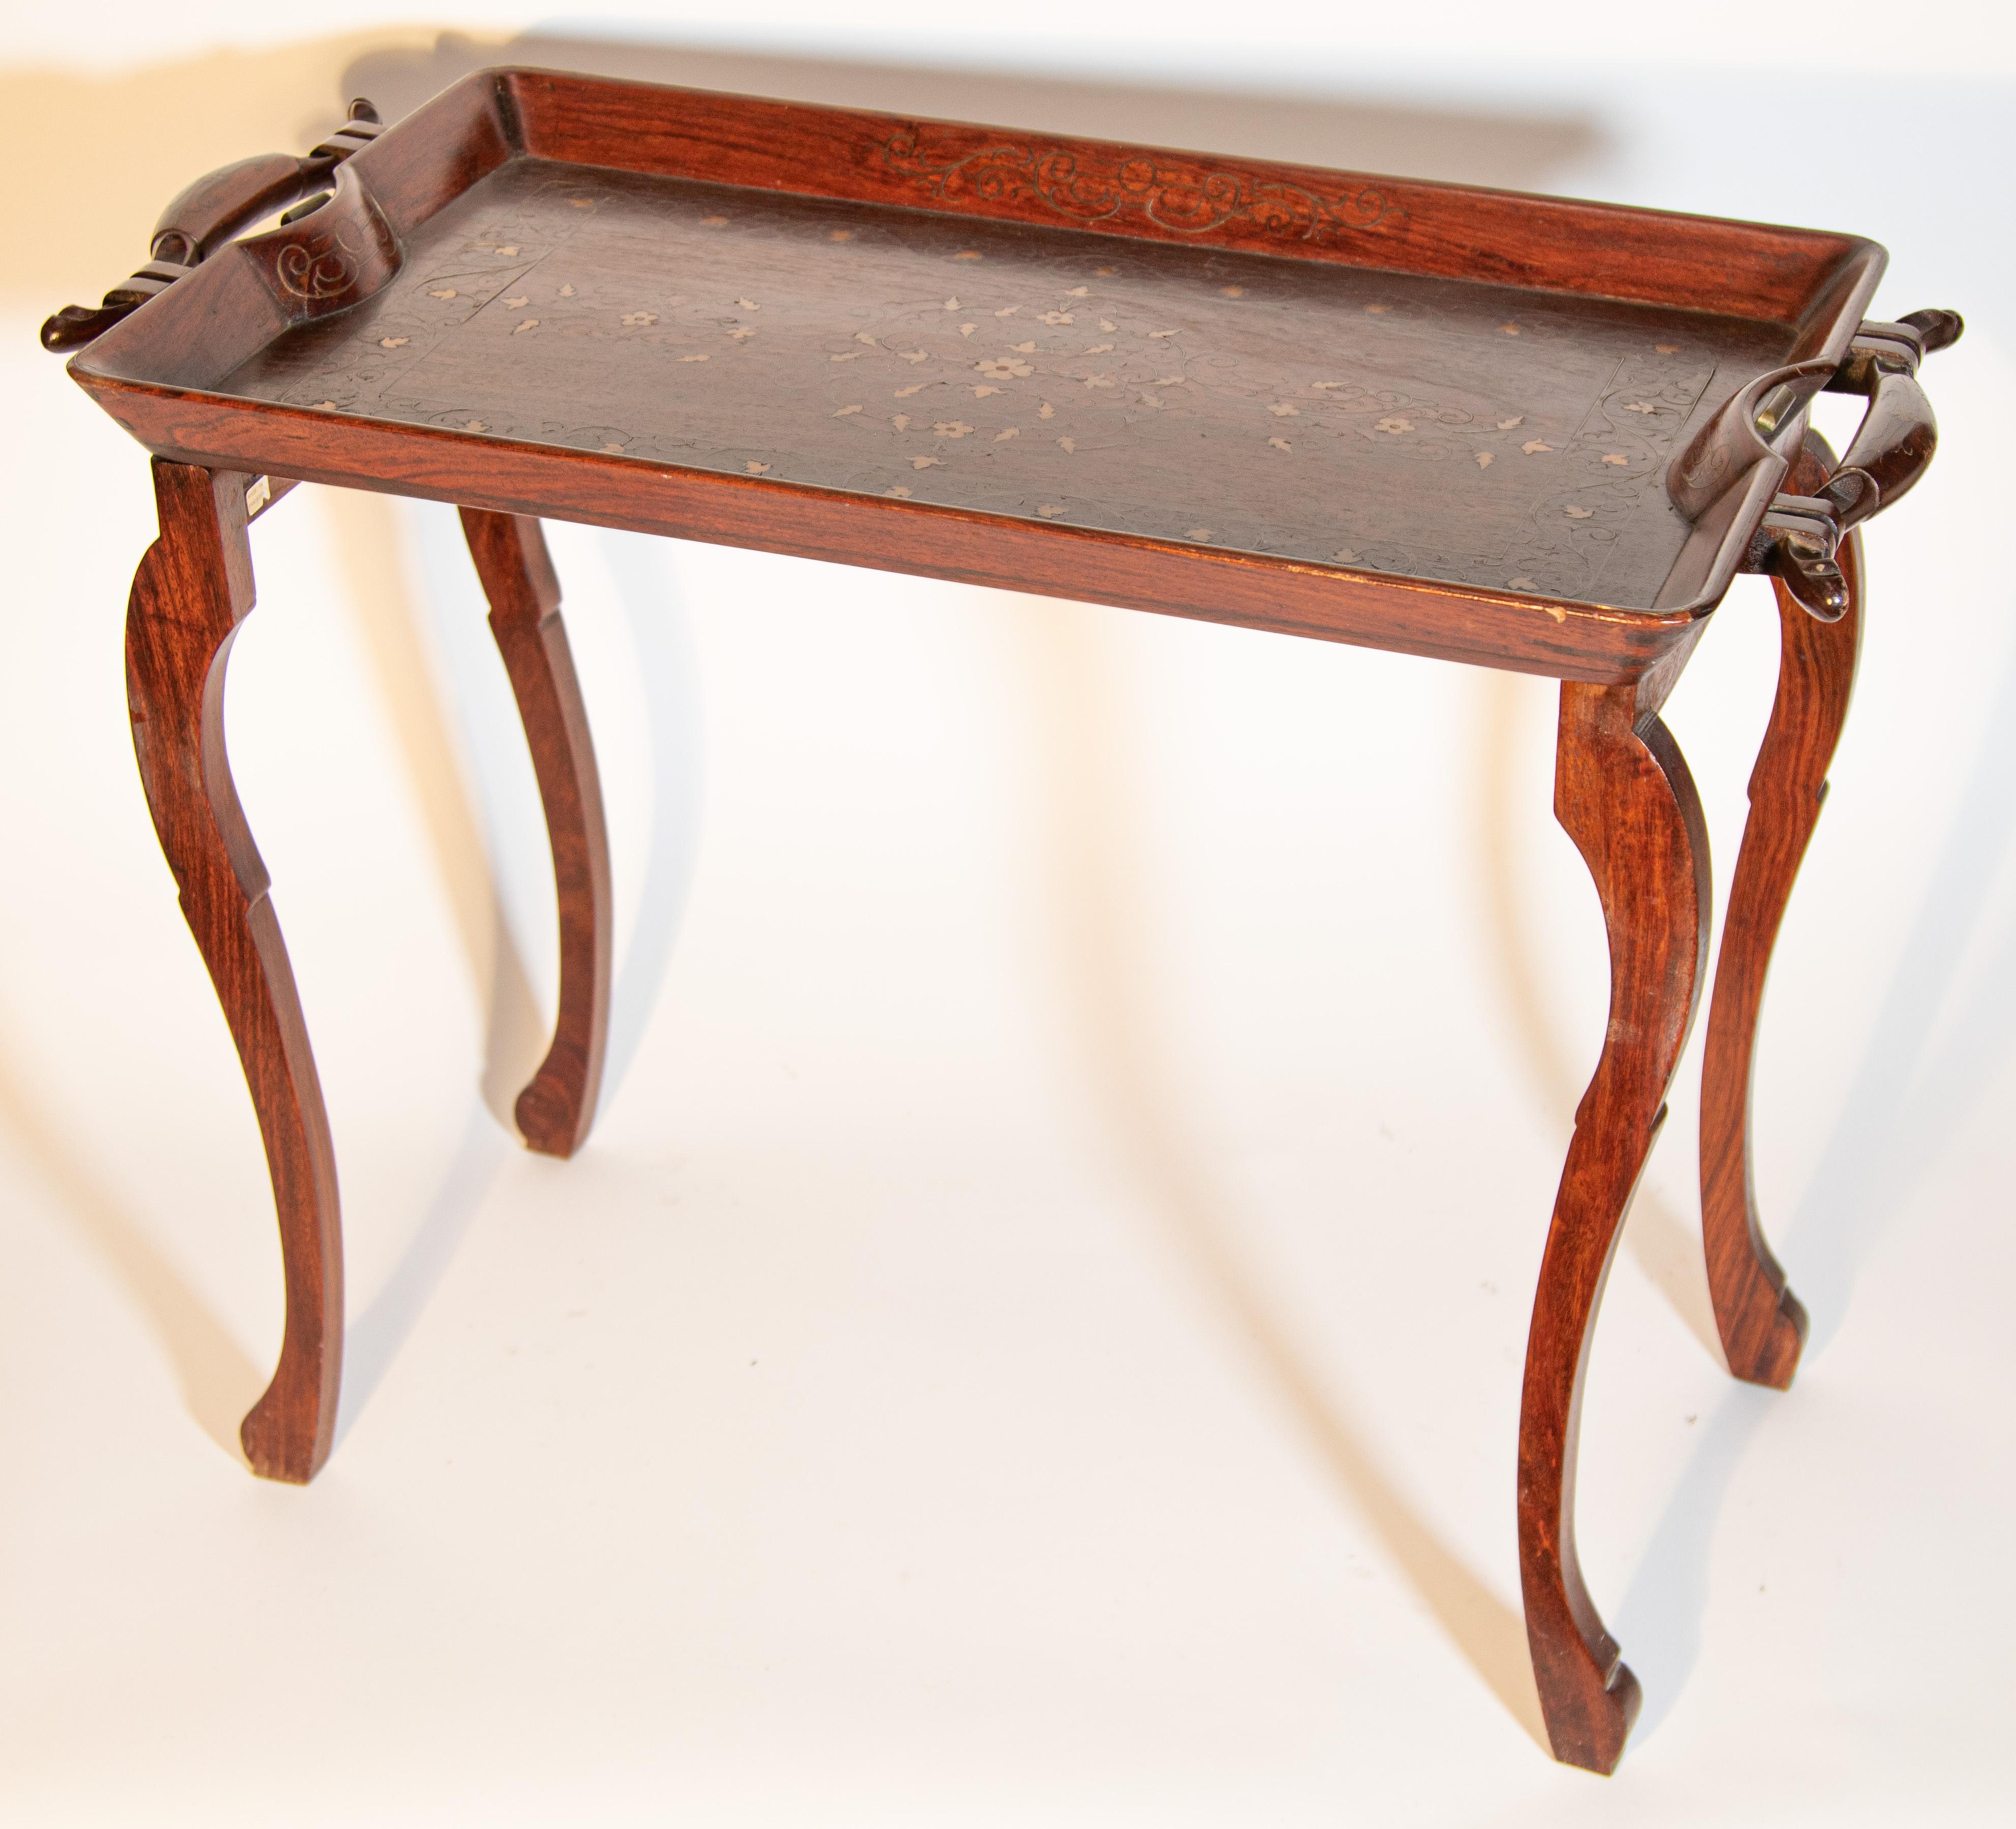 Anglo-indischer Vintage-Tisch aus Palisanderholz mit einem Tablett auf der Oberseite, das meisterhaft von Hand geschnitzt und mit zarten Blumenmustern aus Messing eingelegt ist.
Schöner anglo-indischer Palisandertisch mit Intarsien, aufwändig von